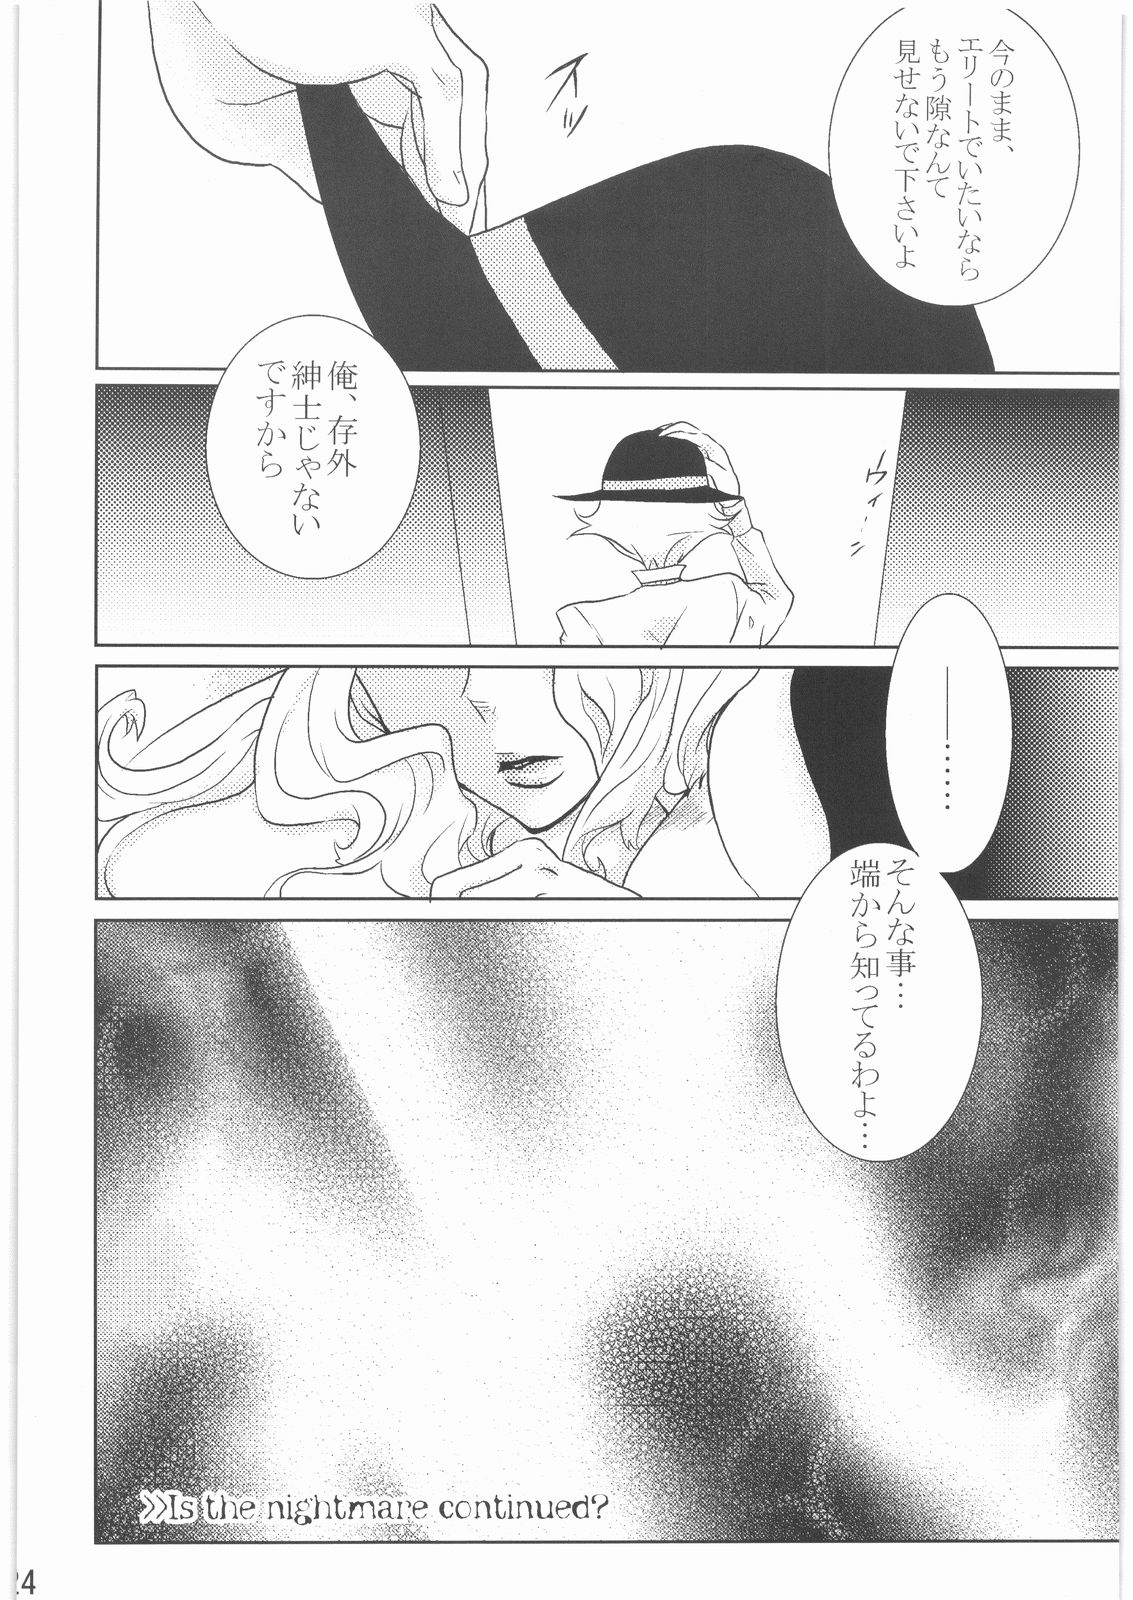 [Darkness GARDEN] Kabushikigaisha Nightmare!  vol.2 (Yes! Precure 5) [Darkness GARDEN] 株式会社ナイトメアッー！ vol.2 (Yes! プリキュア5)